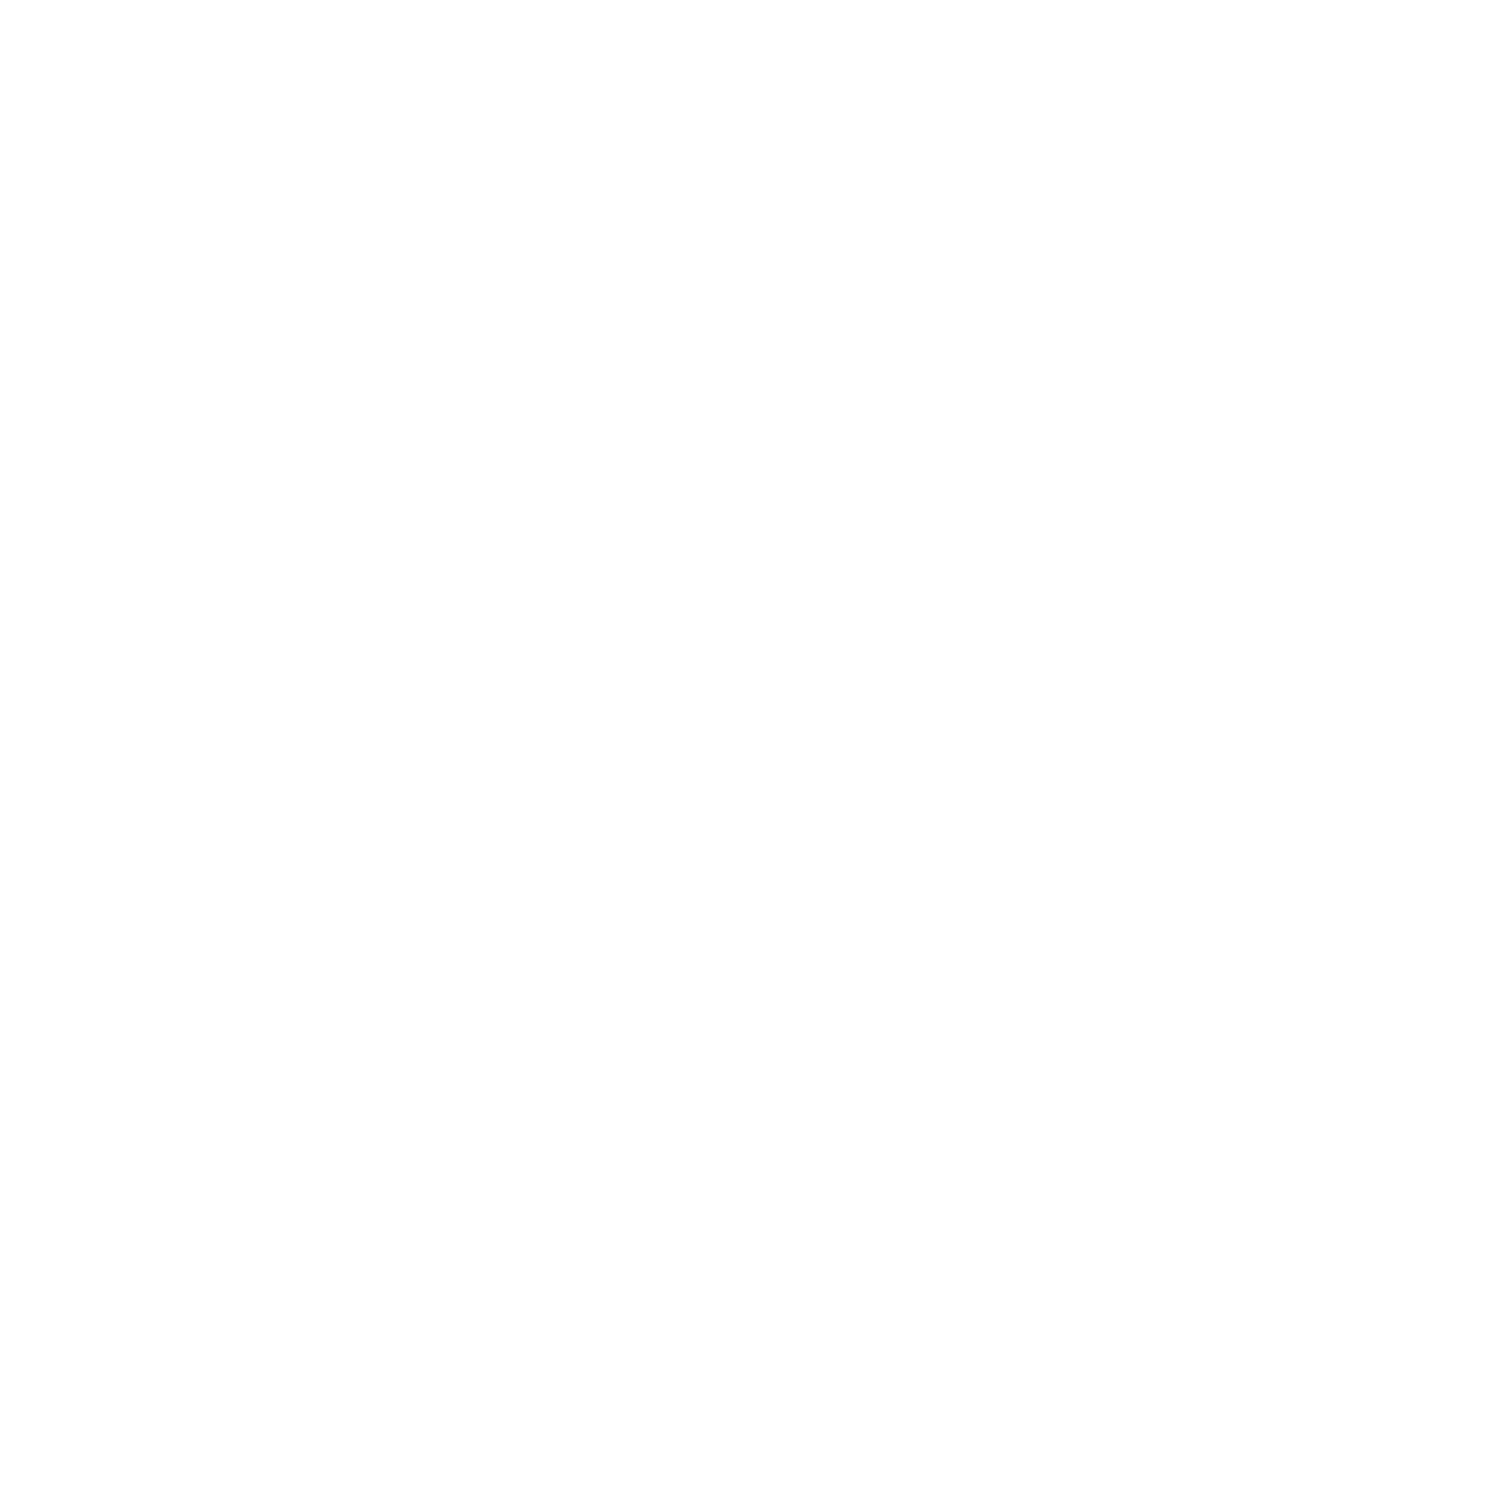 Sounds of Mayhem